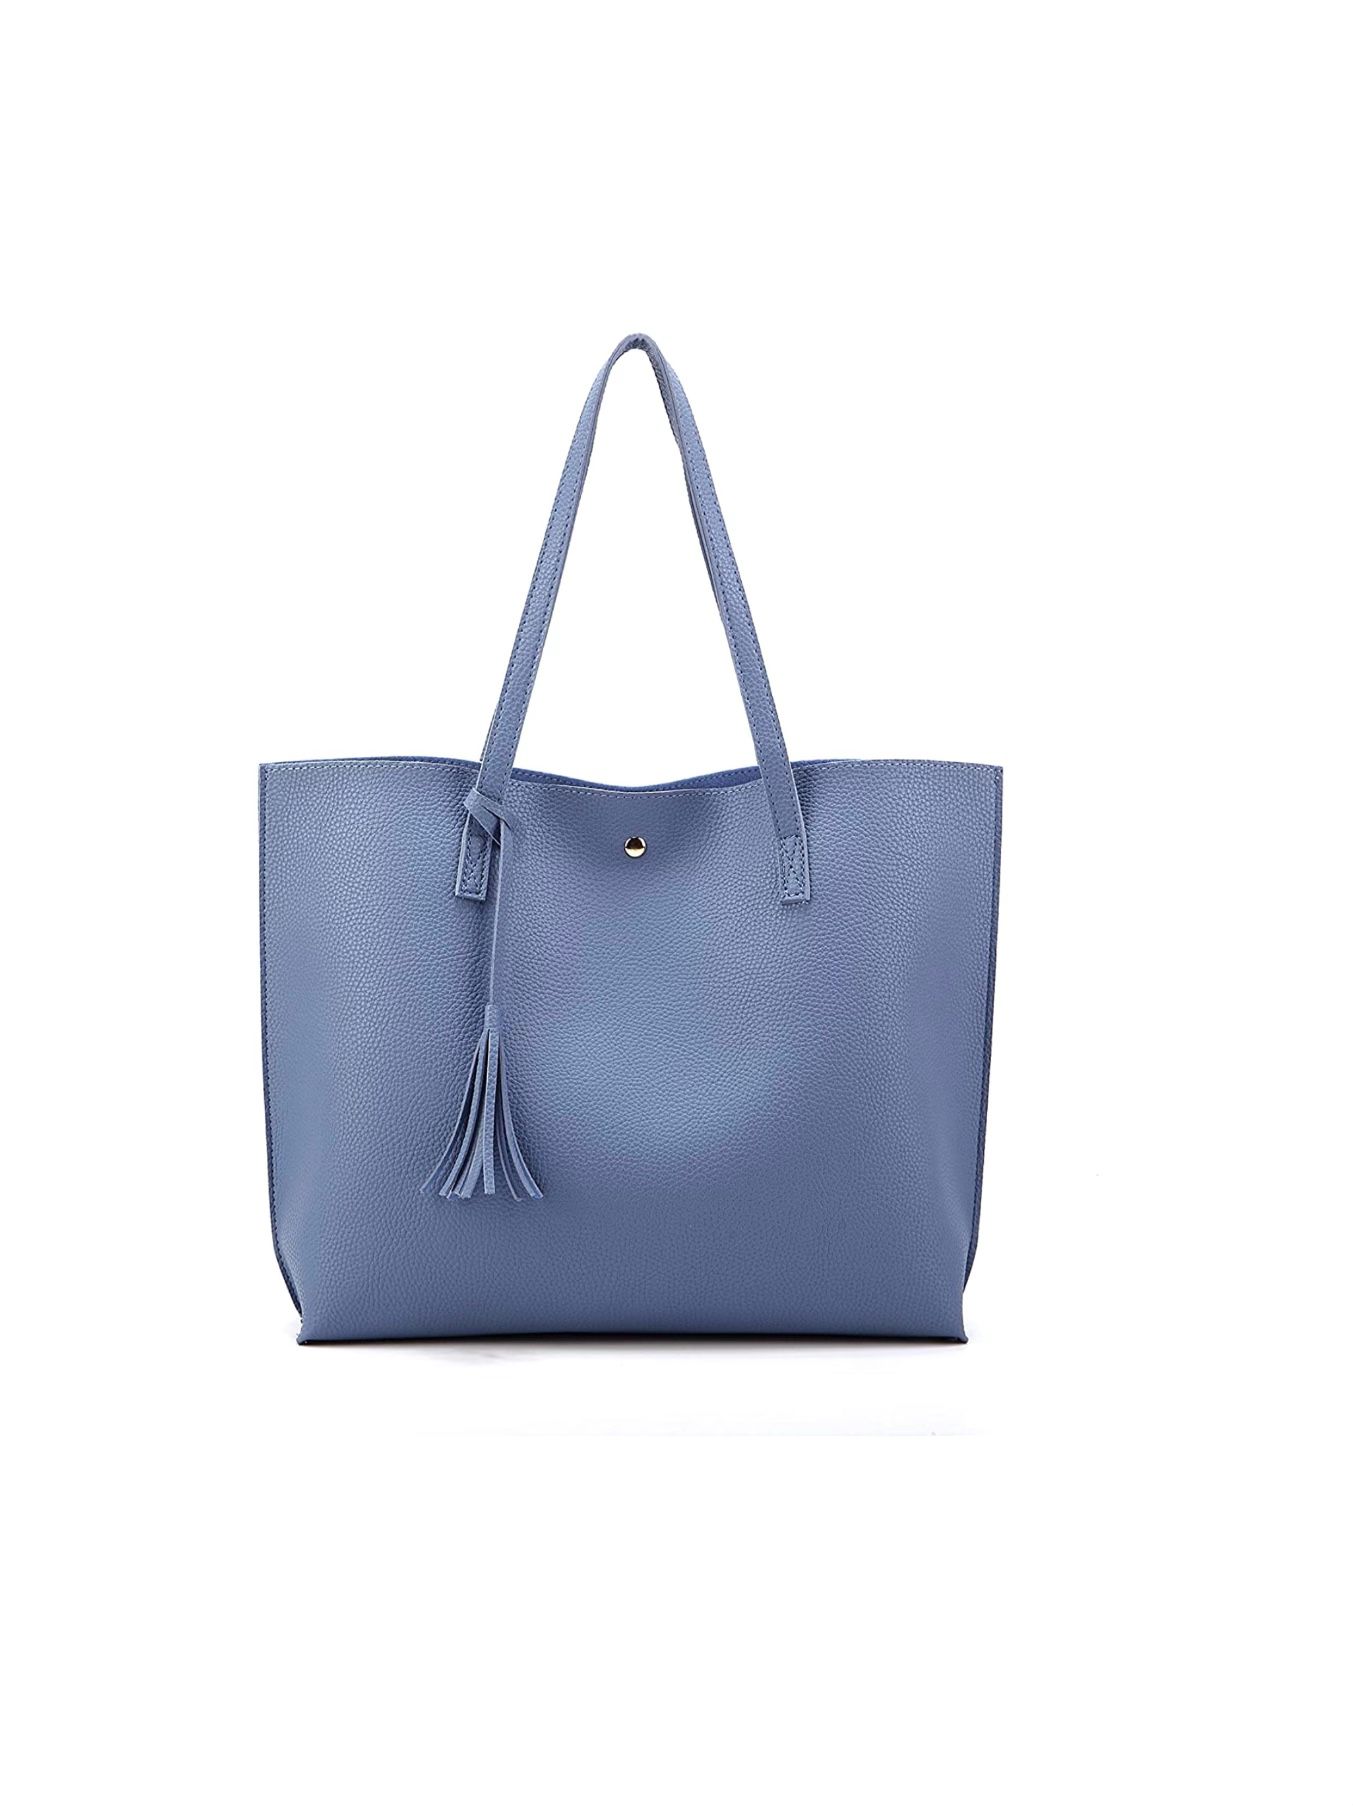 Women Tote Bags Top Handle Satchel Handbags 